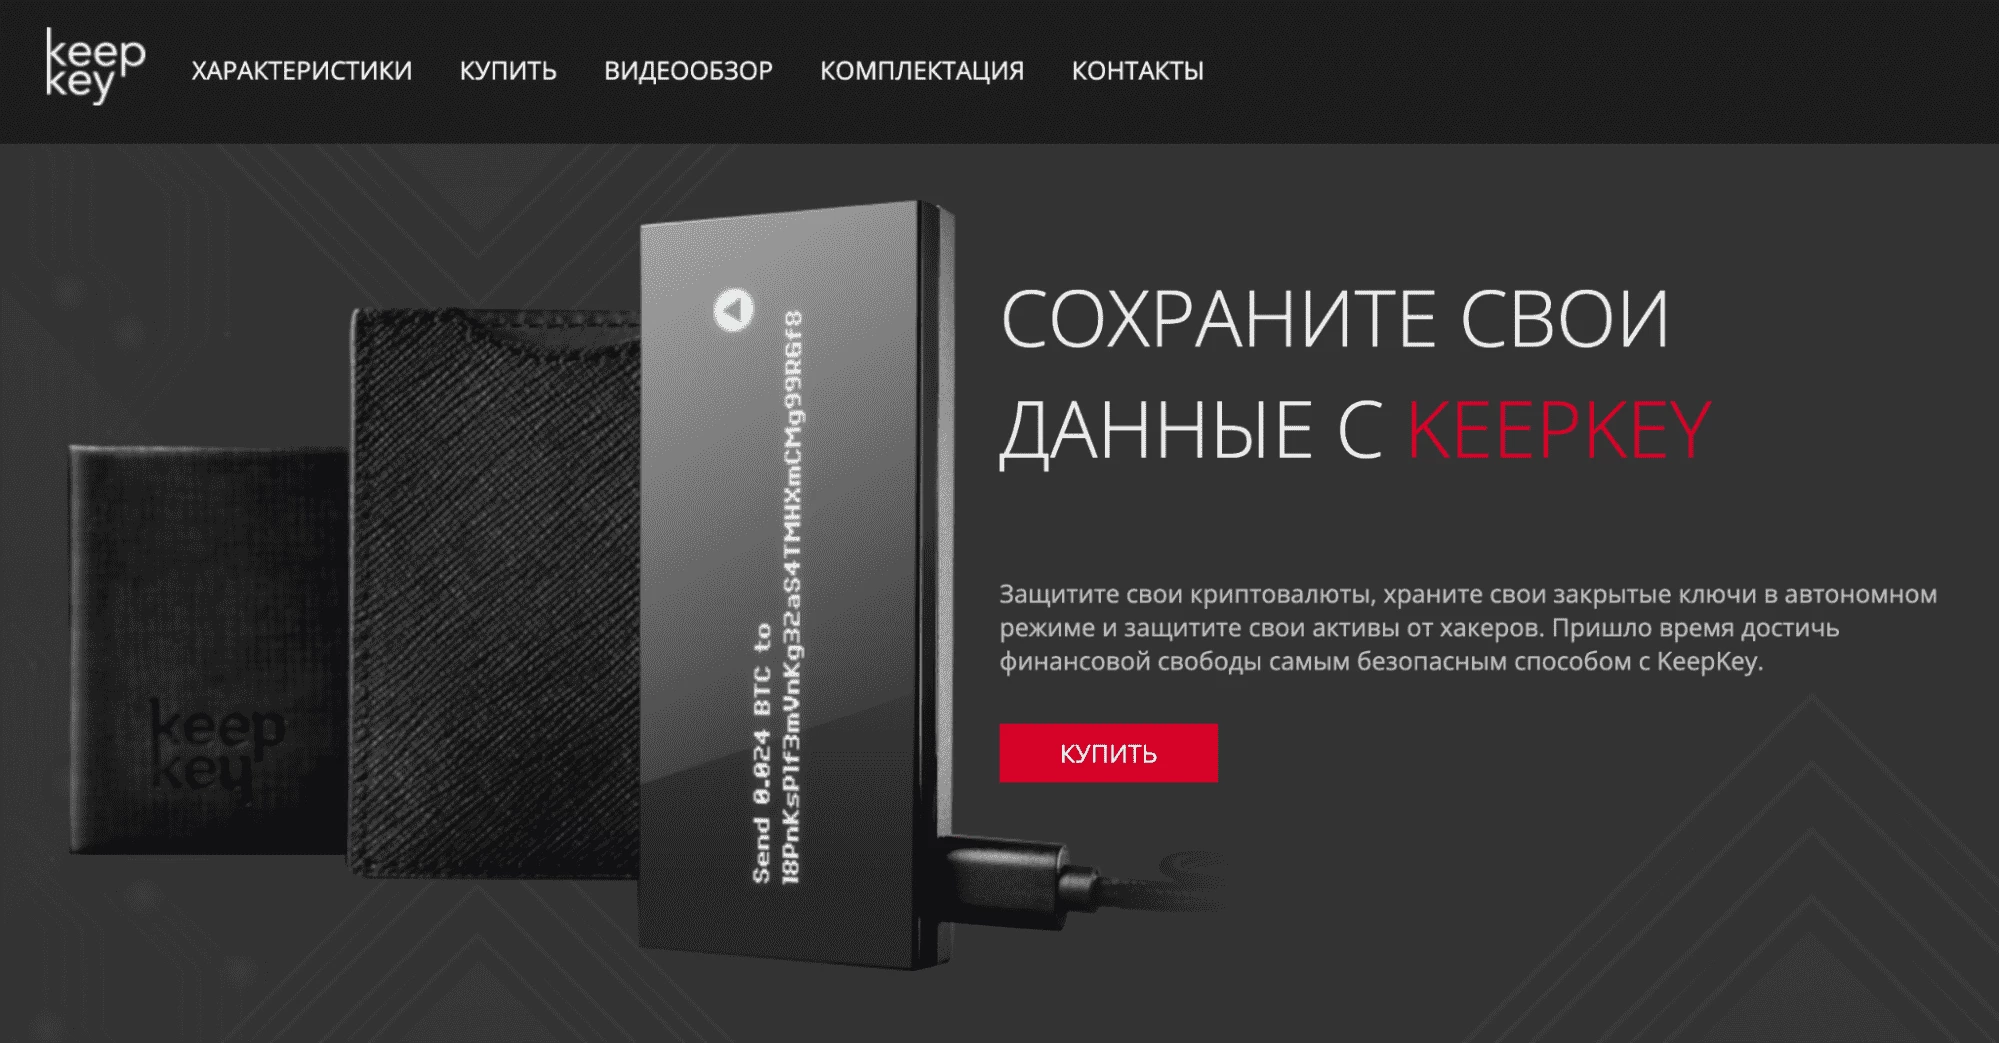 Интерфейс главной страницы онлайн-магазина KeepKey